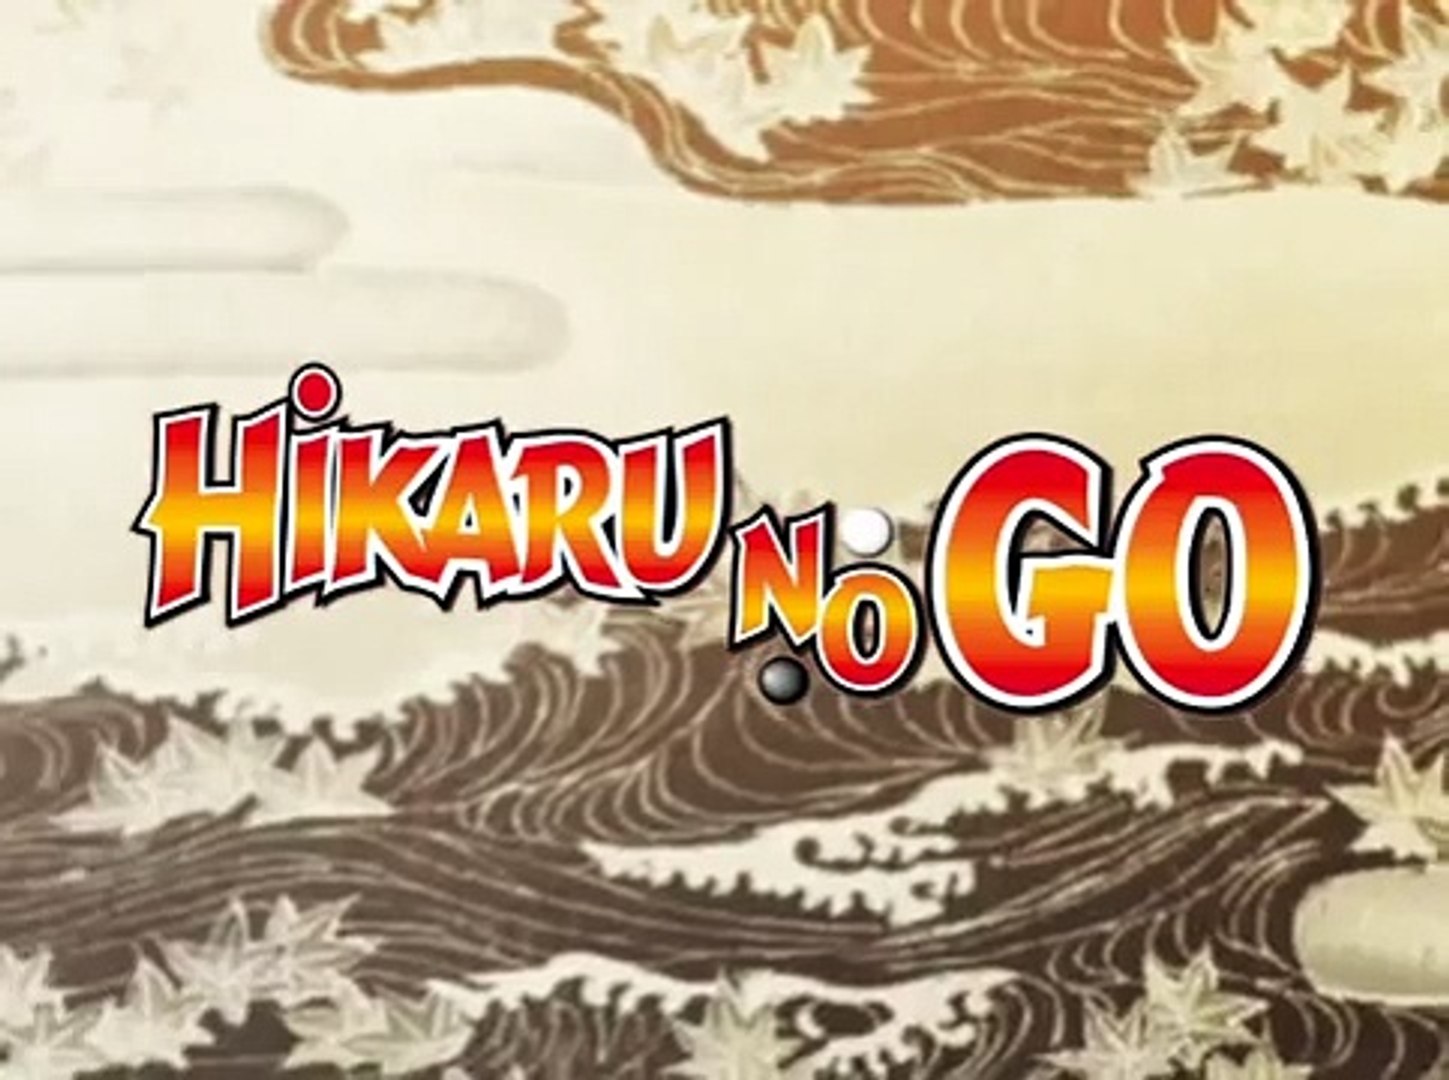 Hikaru no Go 01 Sub ita - Video Dailymotion